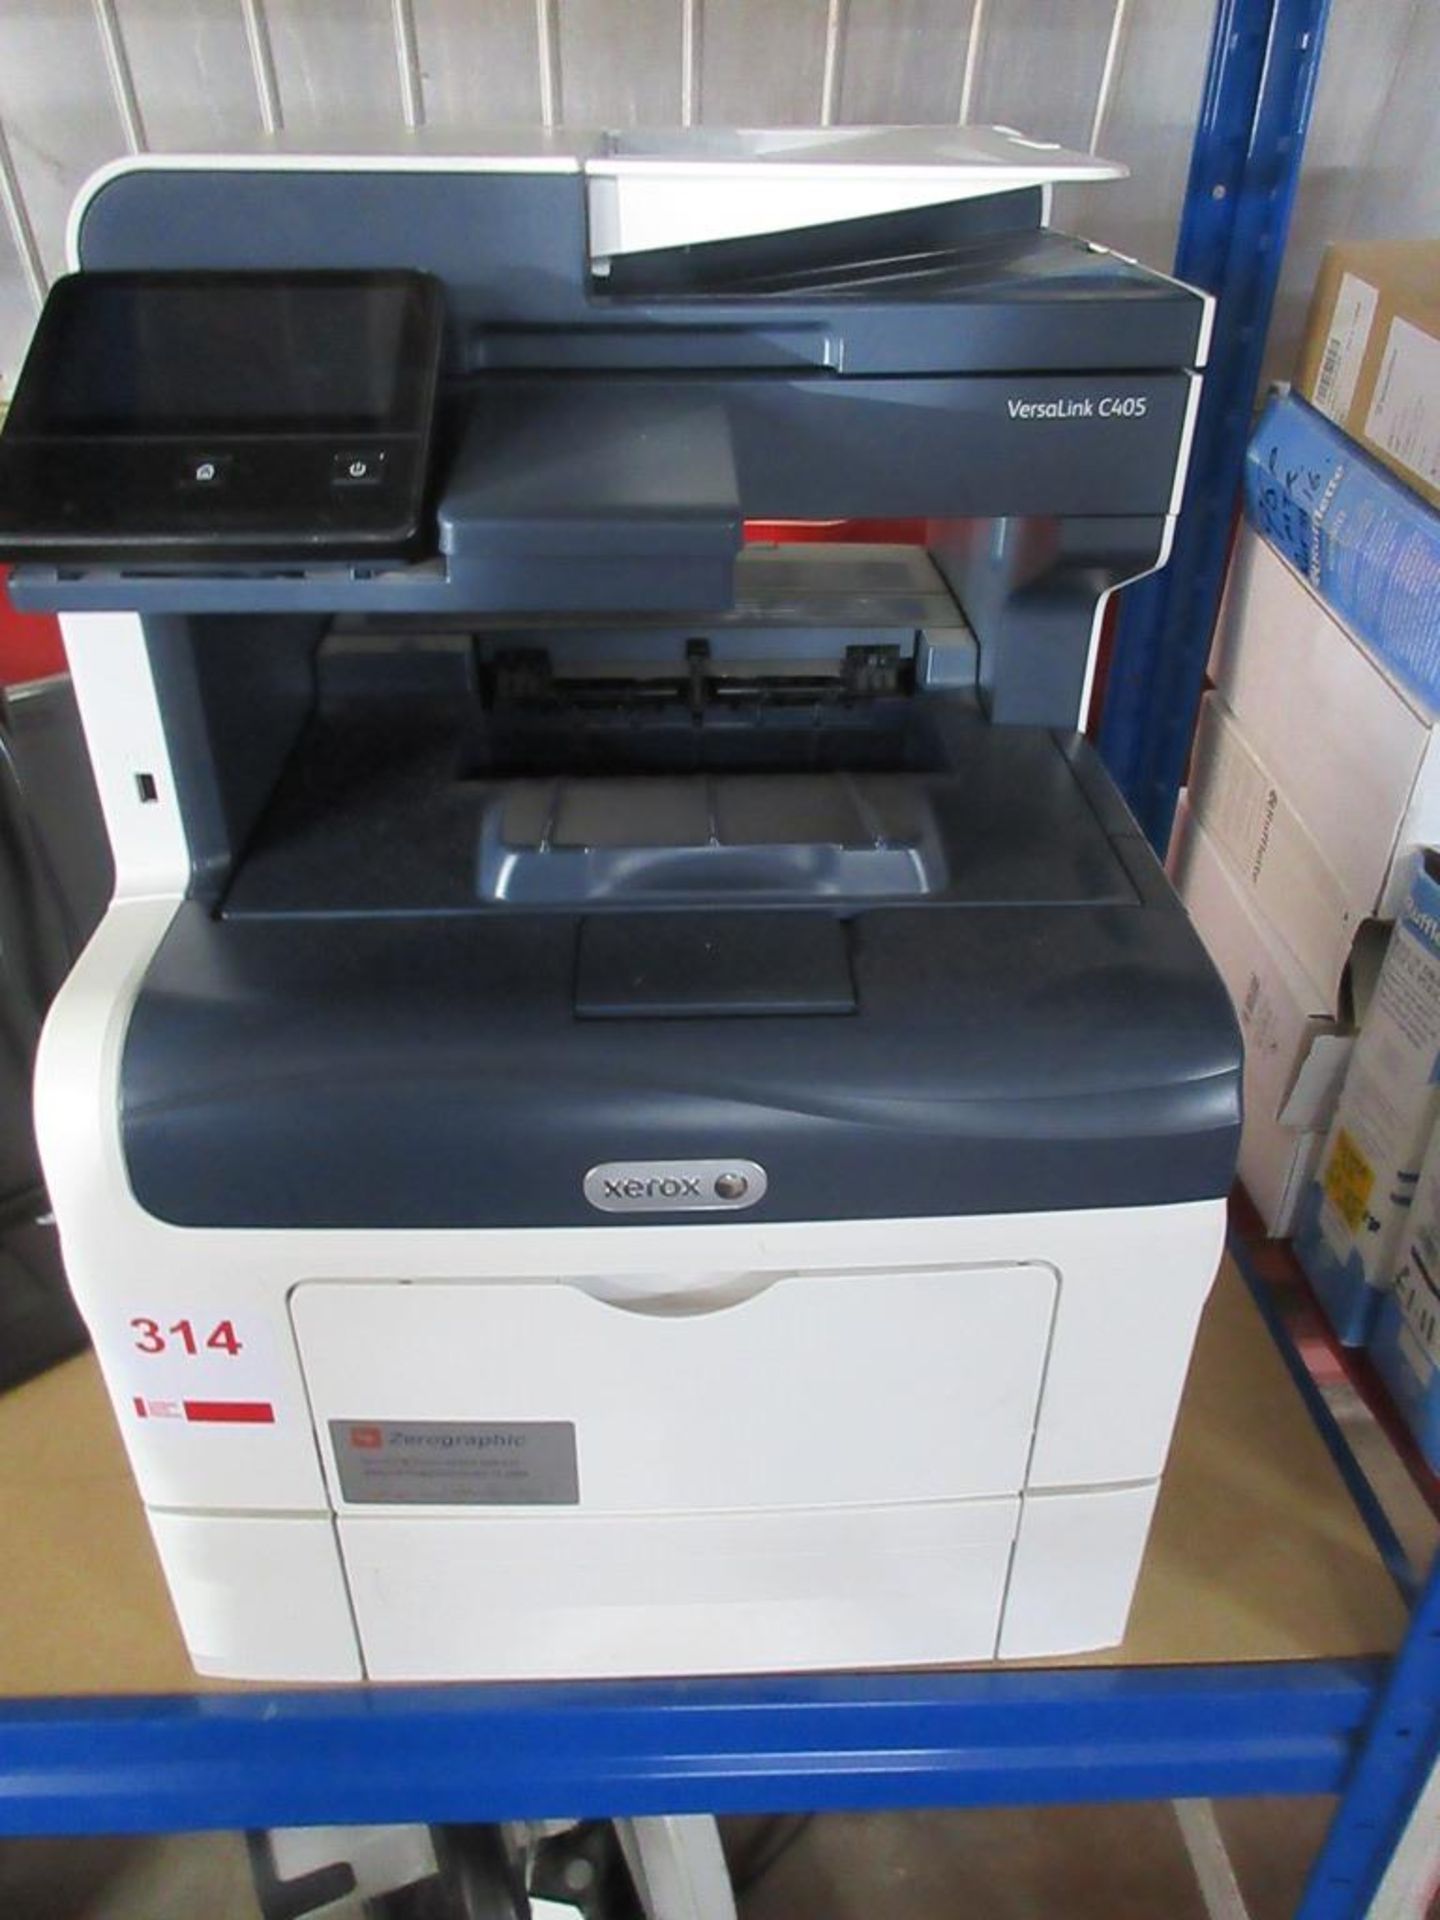 Xerox Versalink C405 printer